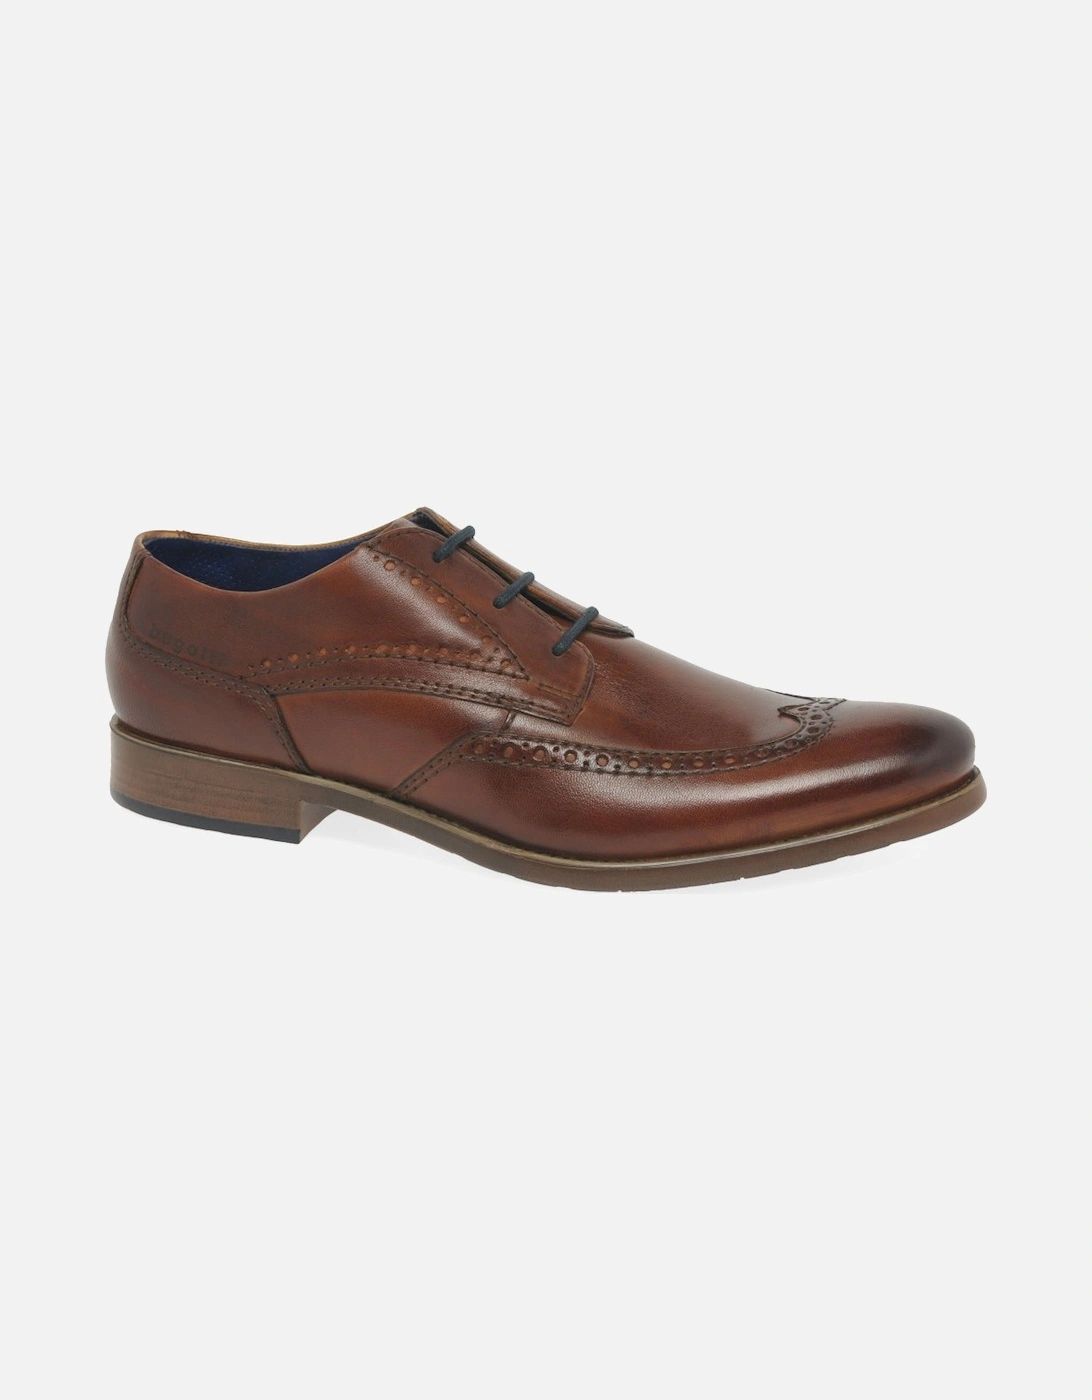 Haleden Mens Formal Shoes, 7 of 6